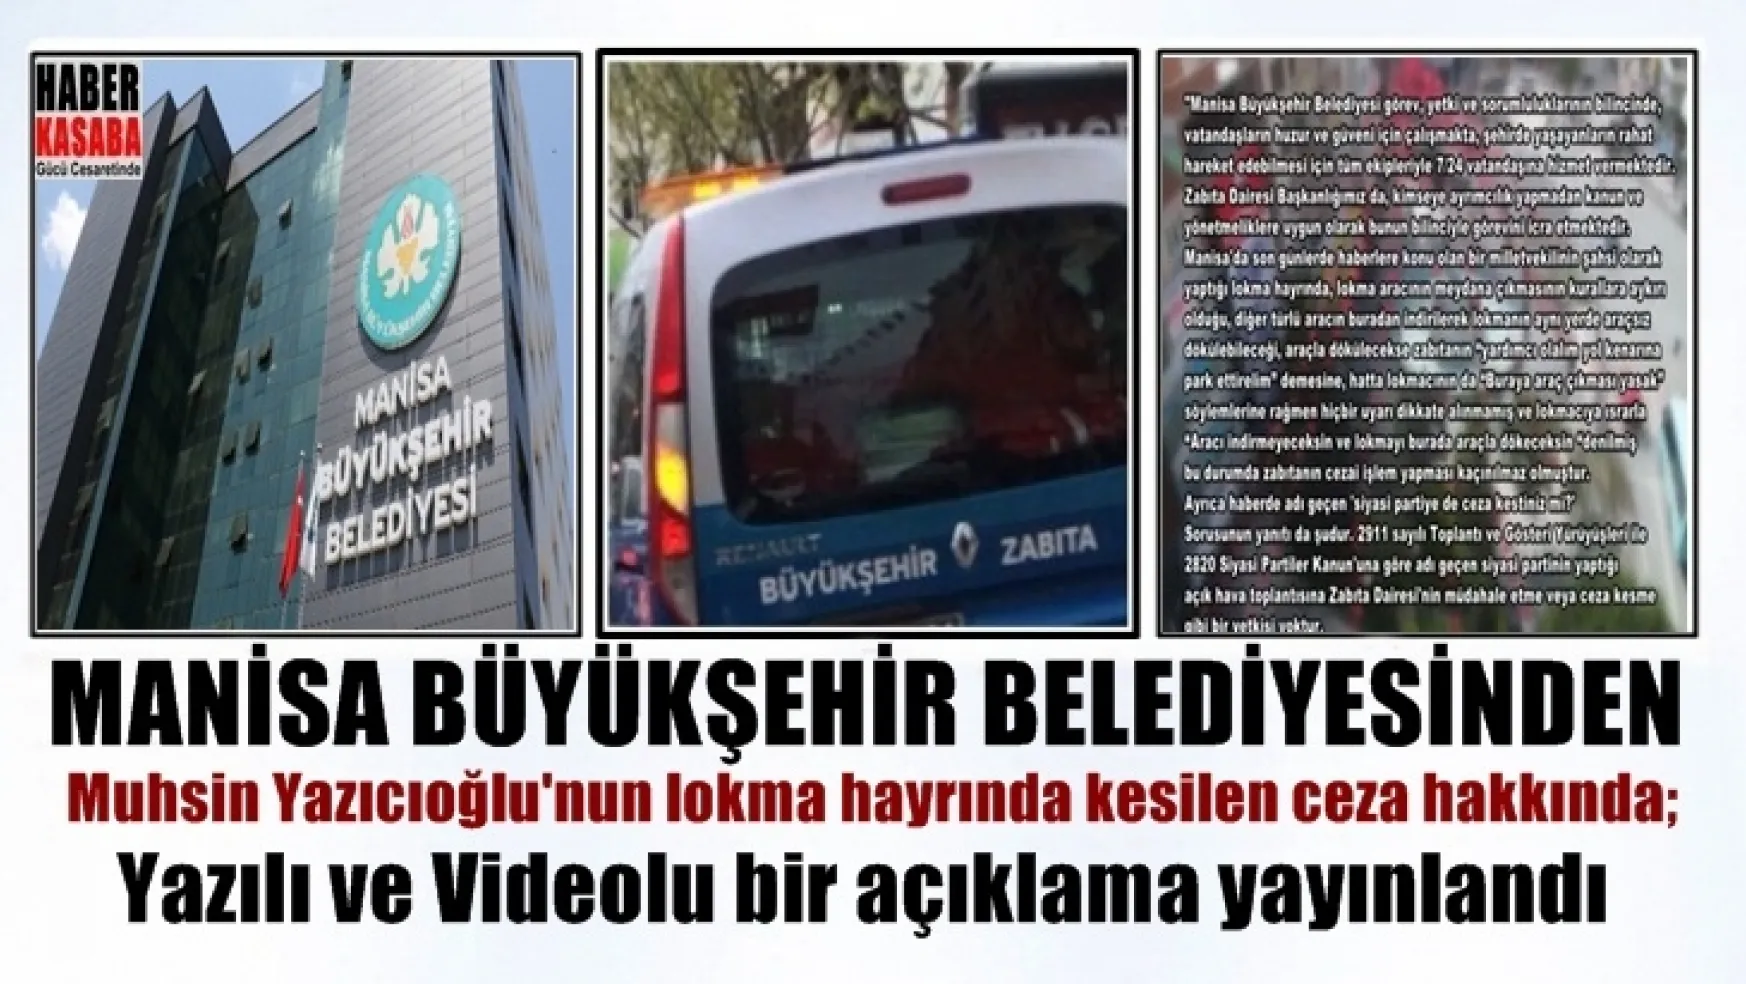 Yazıcıoğlu'nun lokma hayrına Ceza haberlerine açıklama!